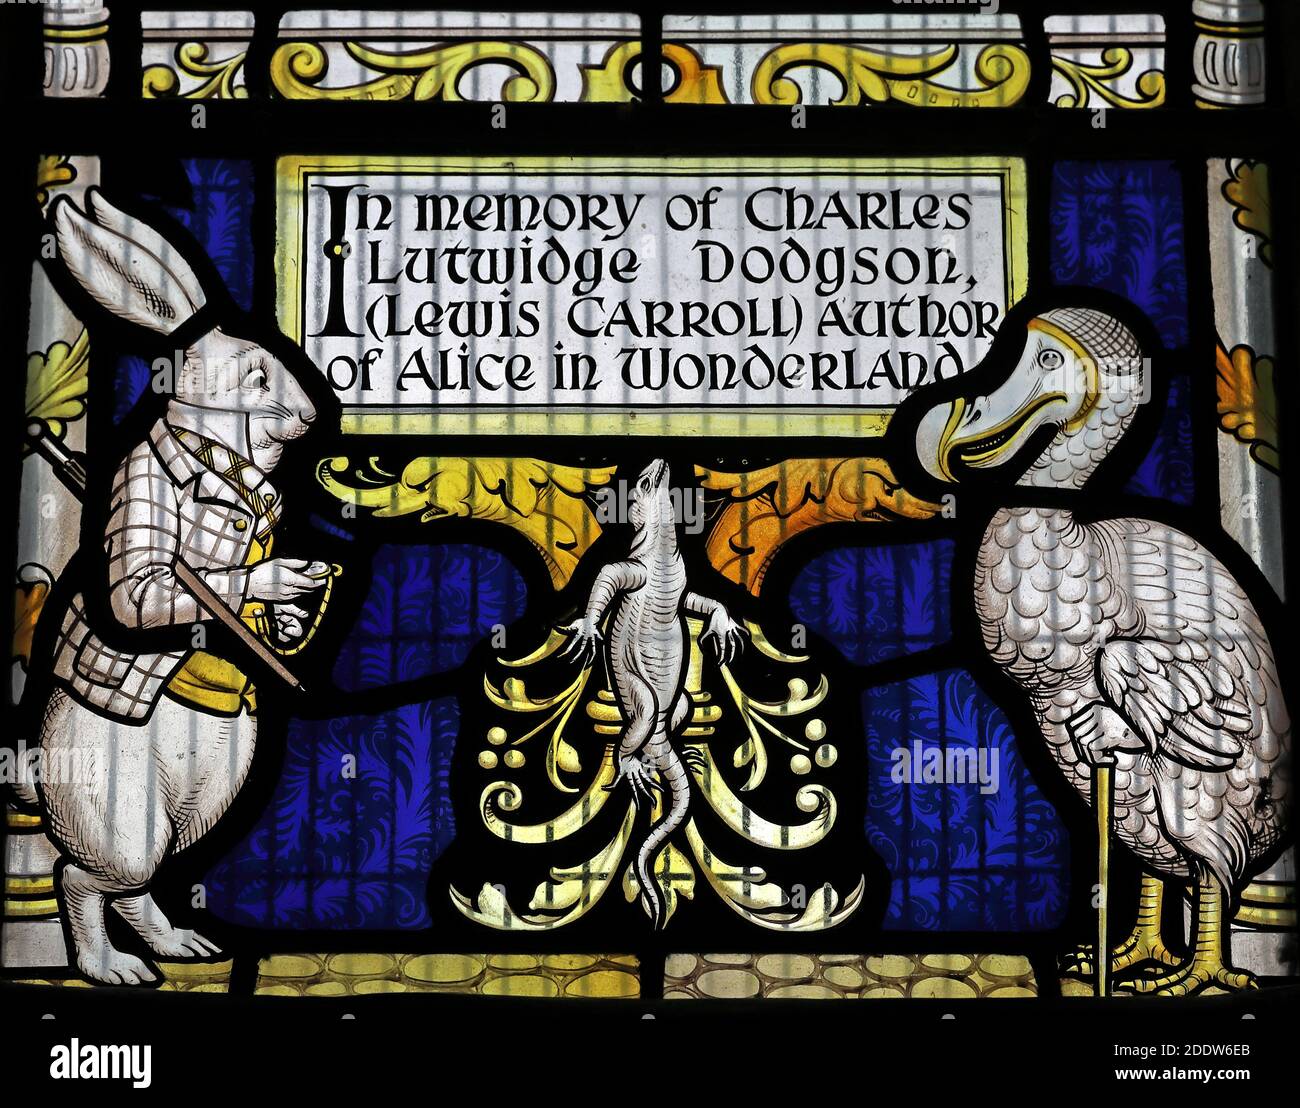 Lewis Carroll fenêtre, tous les saints, Daresbury Village, Warrington, Cheshire, Rabbit, Dodo, Lizard, en mémoire de Charles Lutwidge Dodgson Banque D'Images